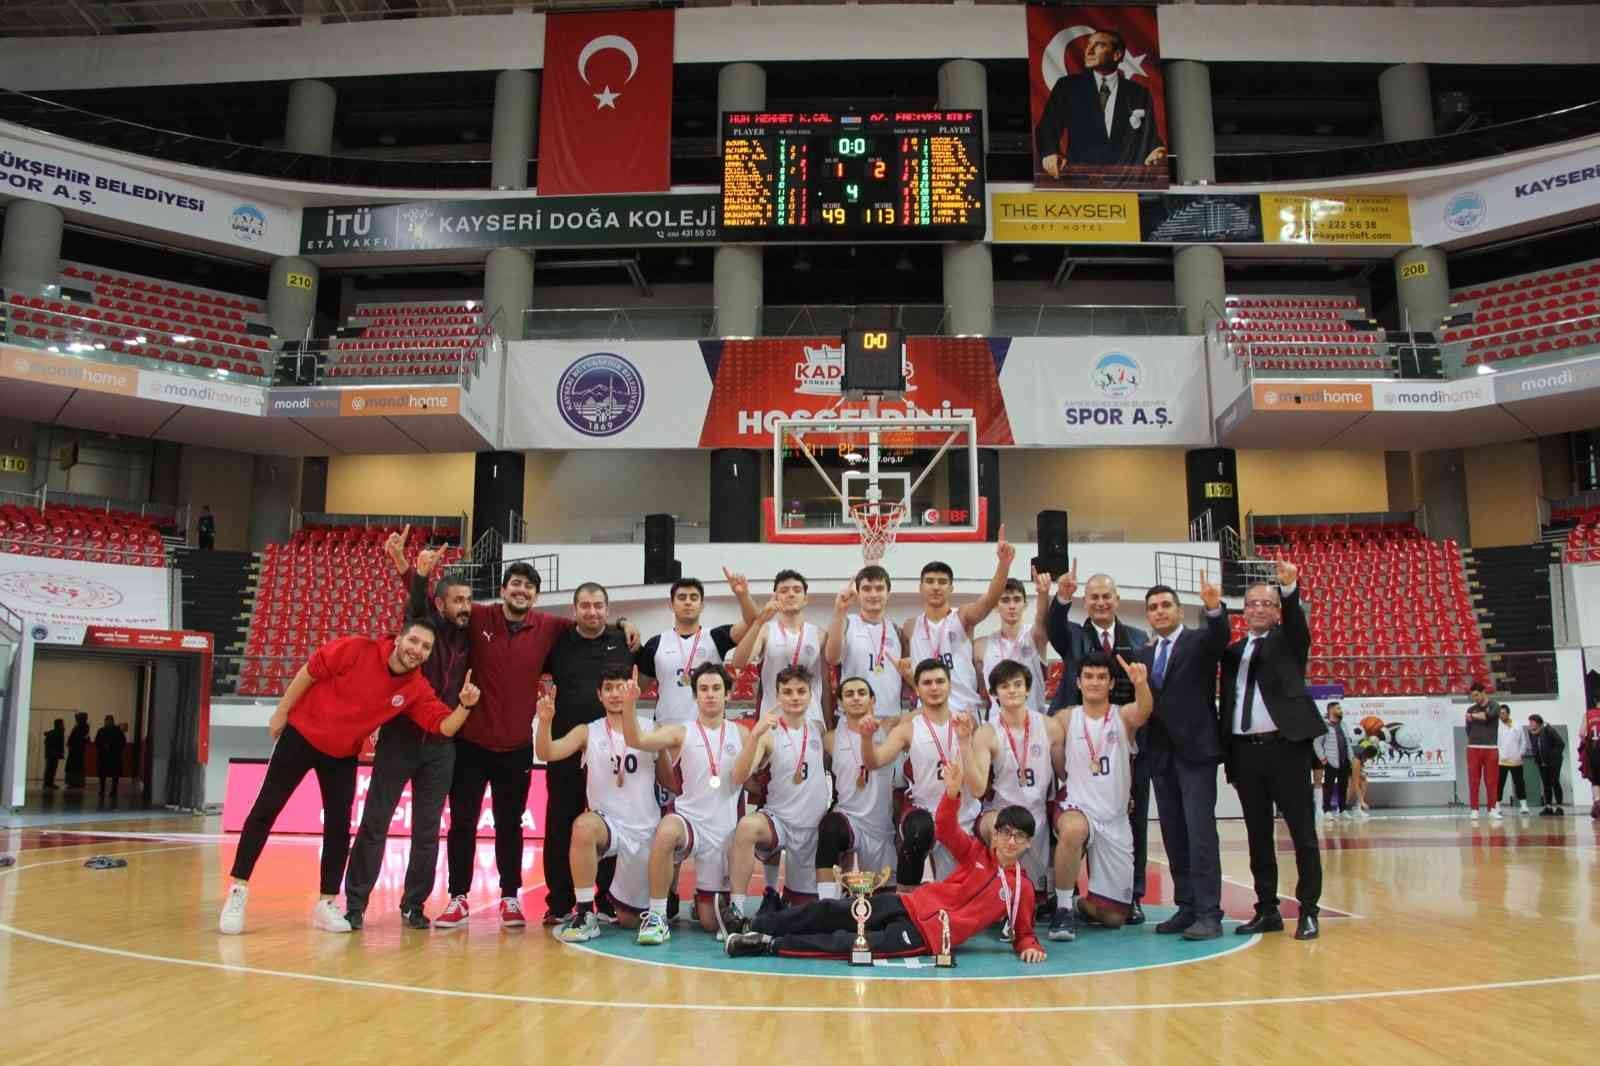 Erciyes Koleji’nin gençleri şampiyon oldu #kayseri